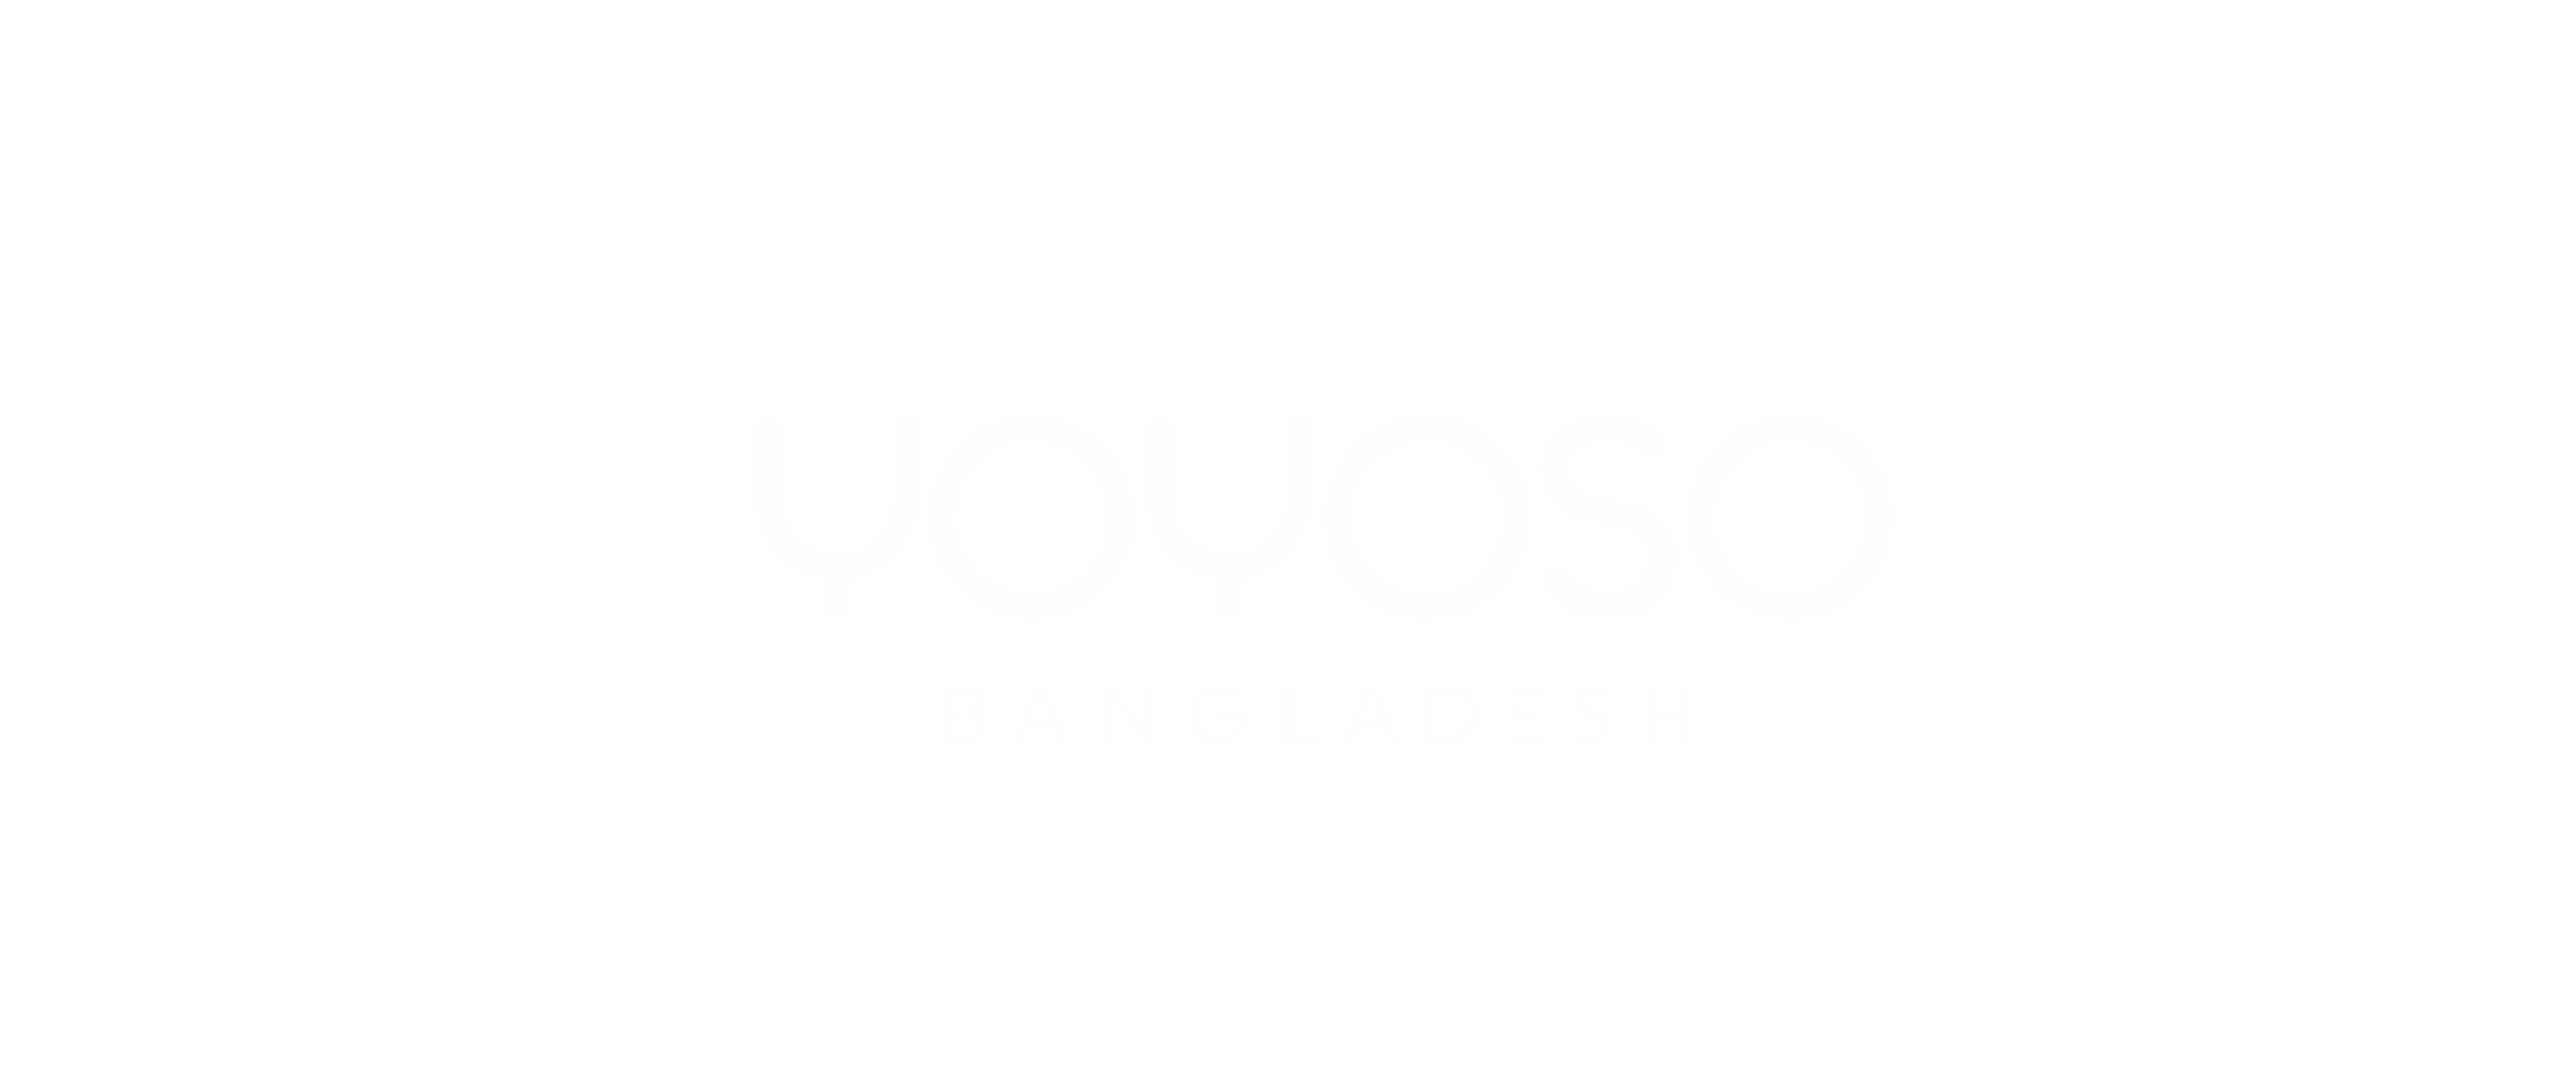 YOYOSO BANGLADESH